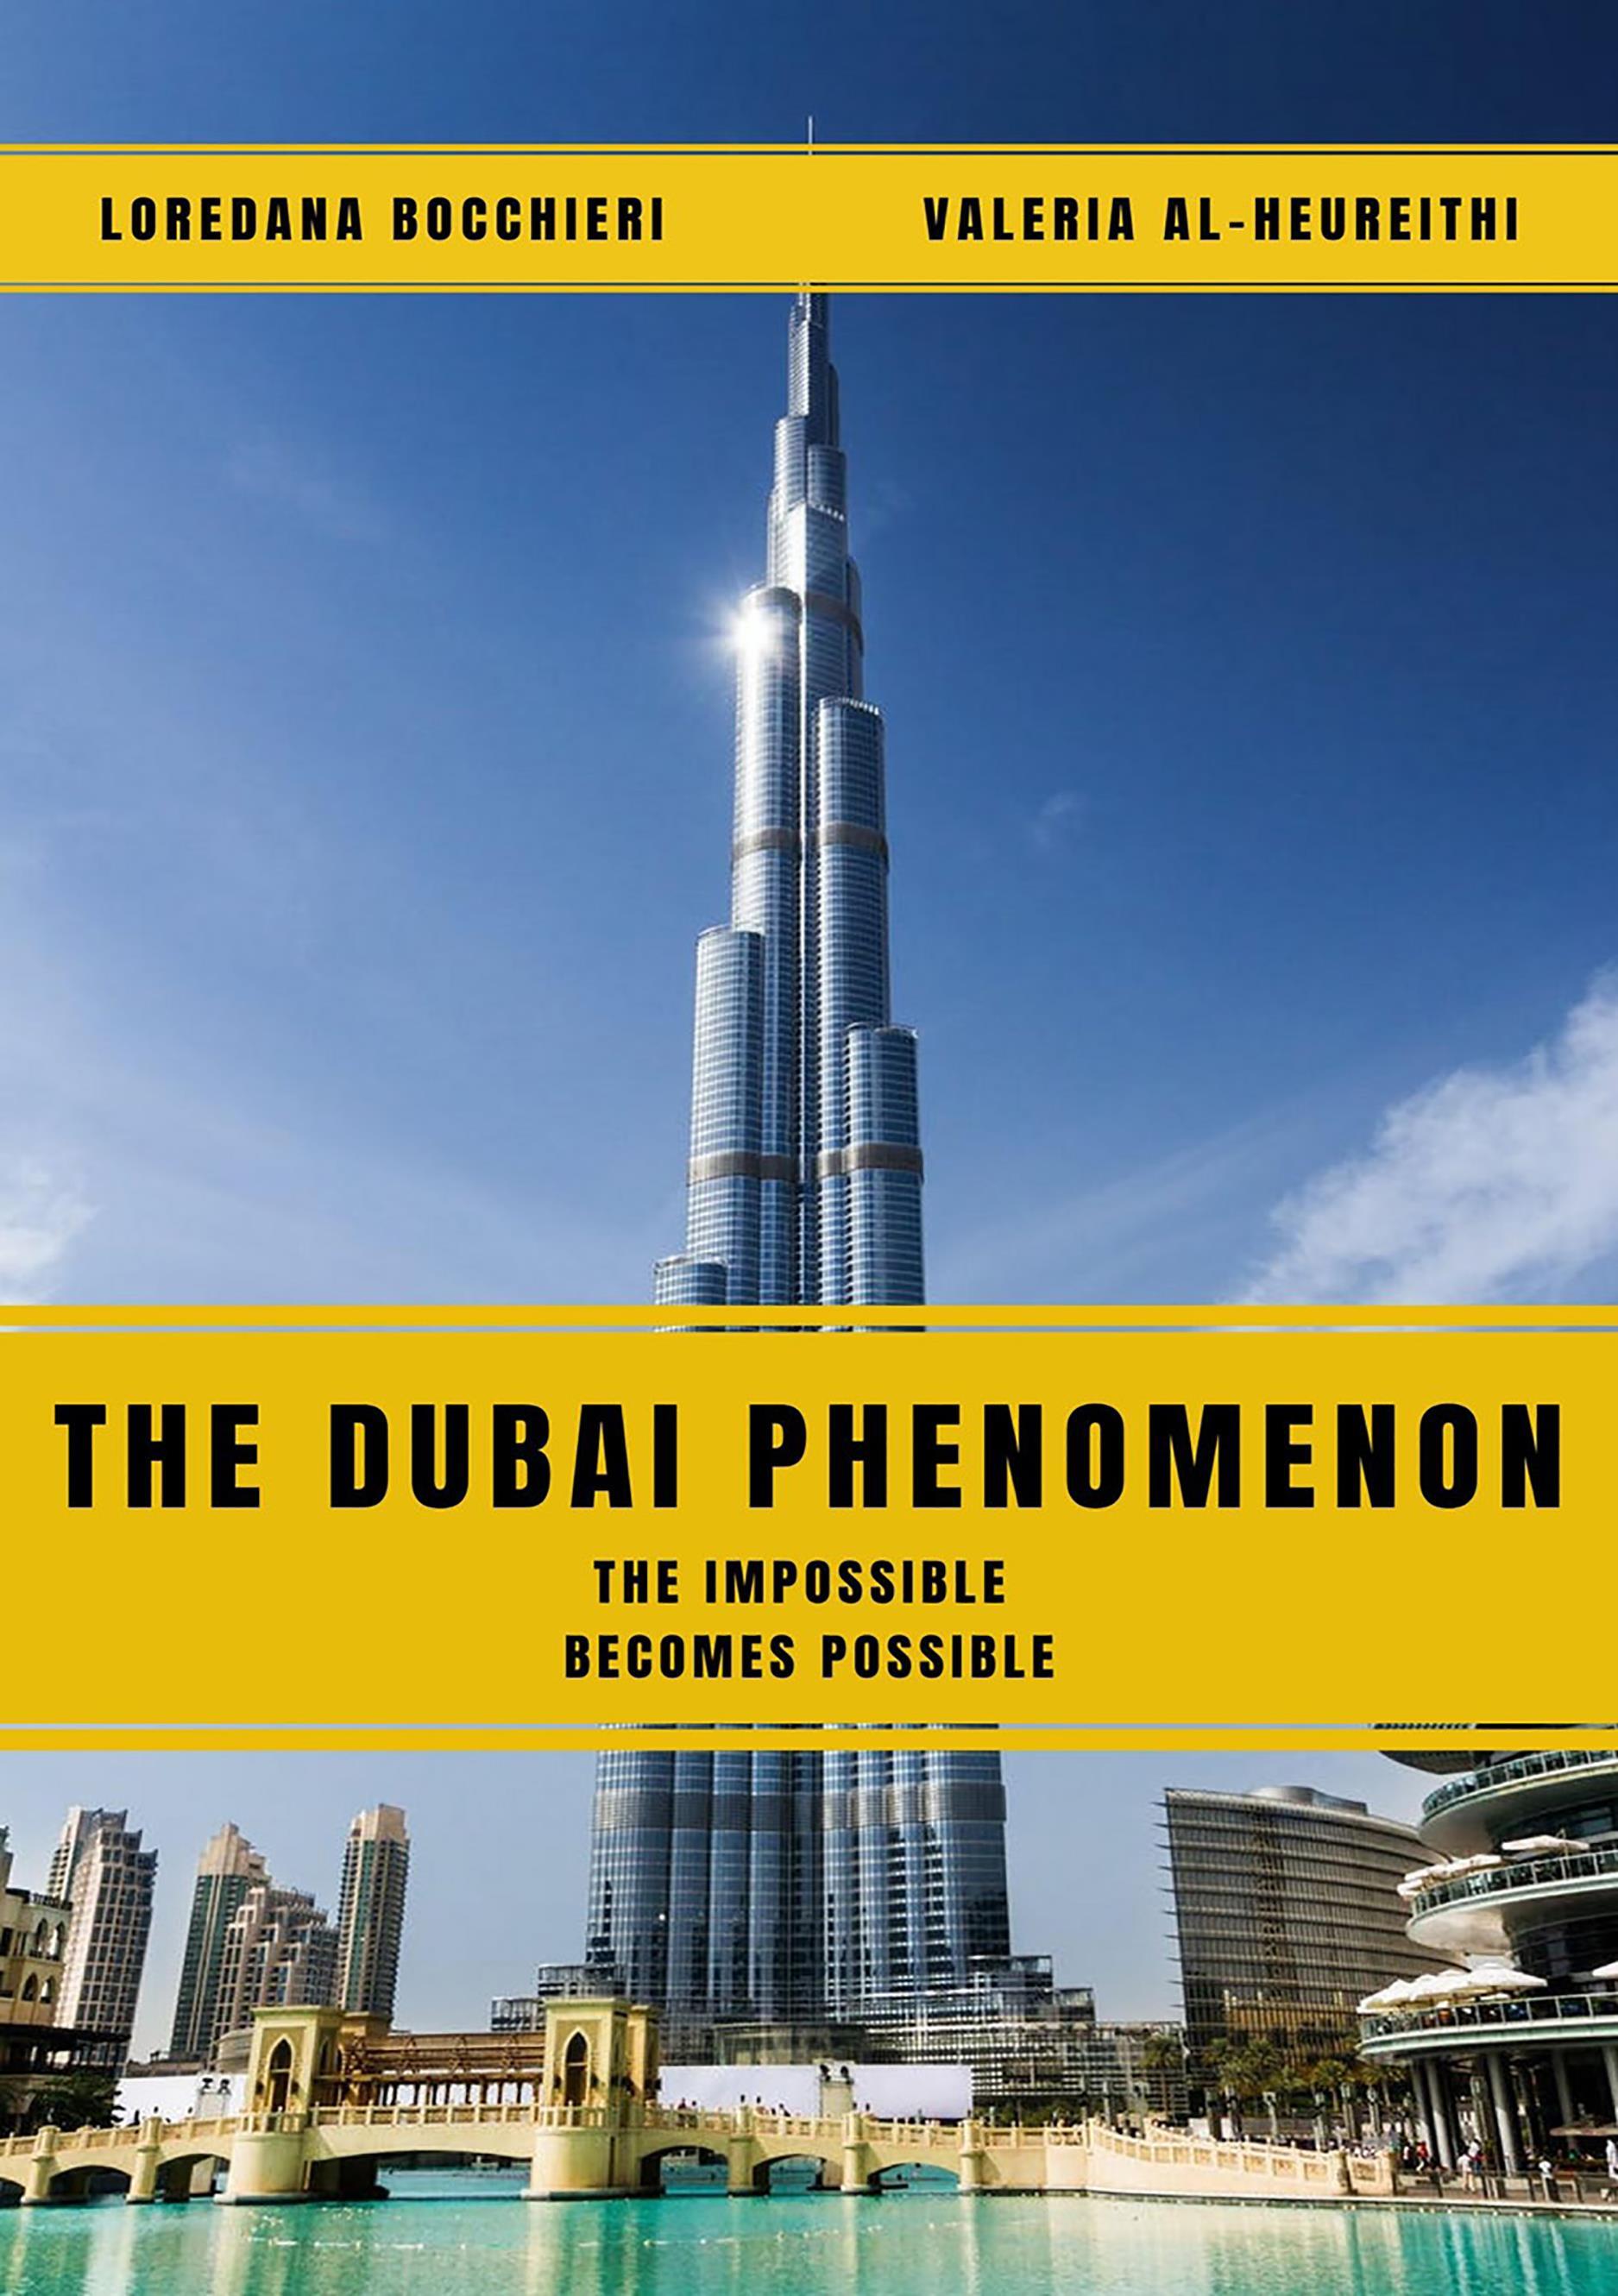 The Dubai Phenomenon - The impossible becomes possible